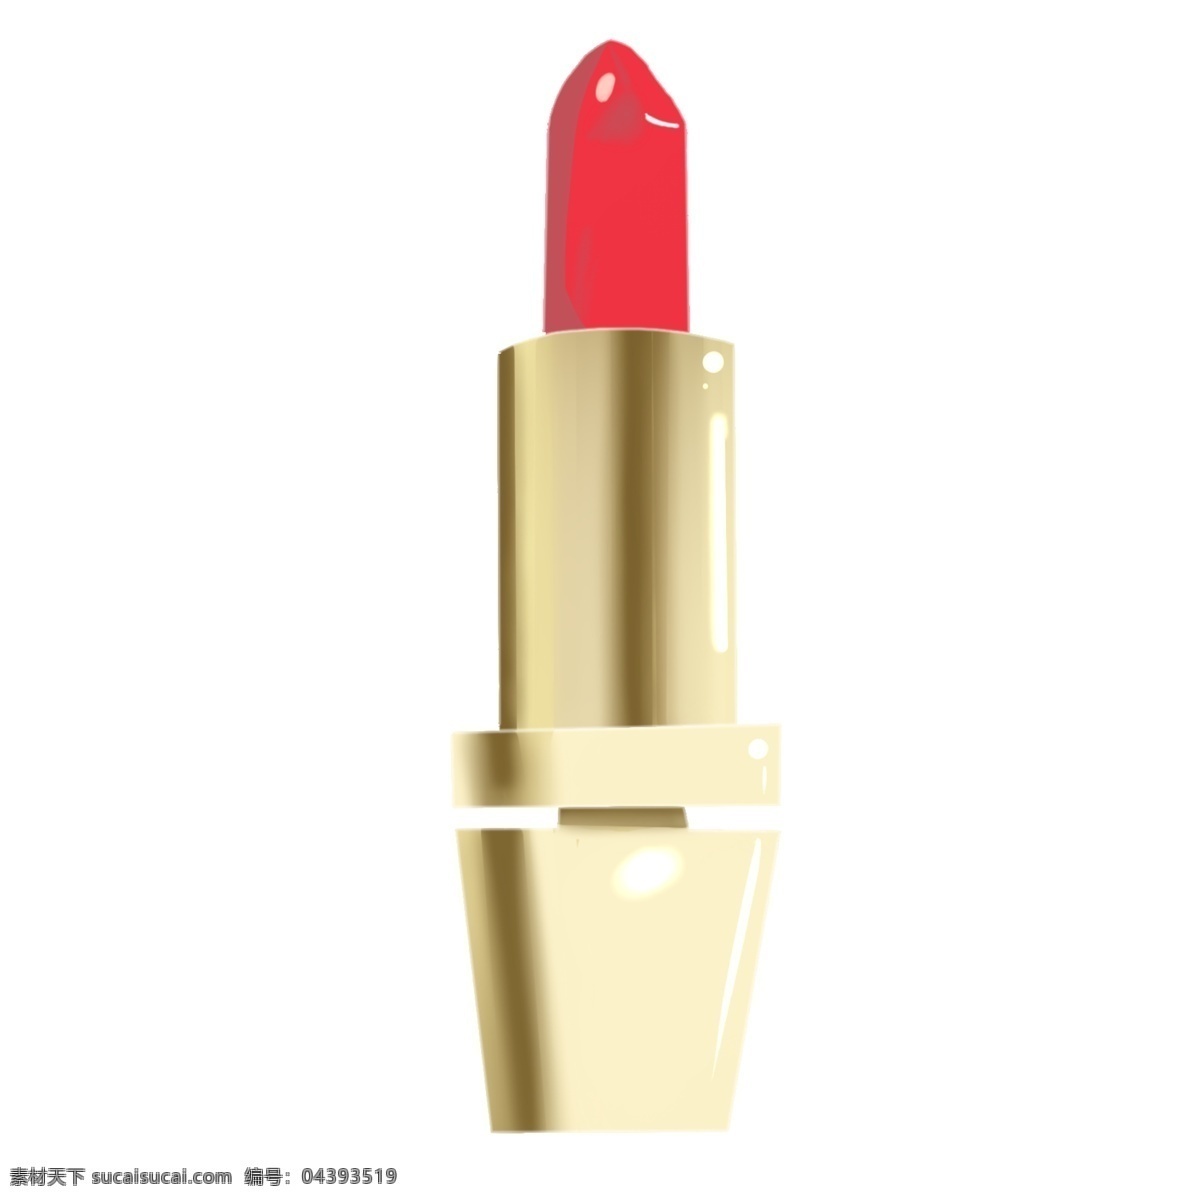 女性 化妆用品 口红 红色的口红 金色管子 金属管 唇膏 鲜艳的红口红 美容用品